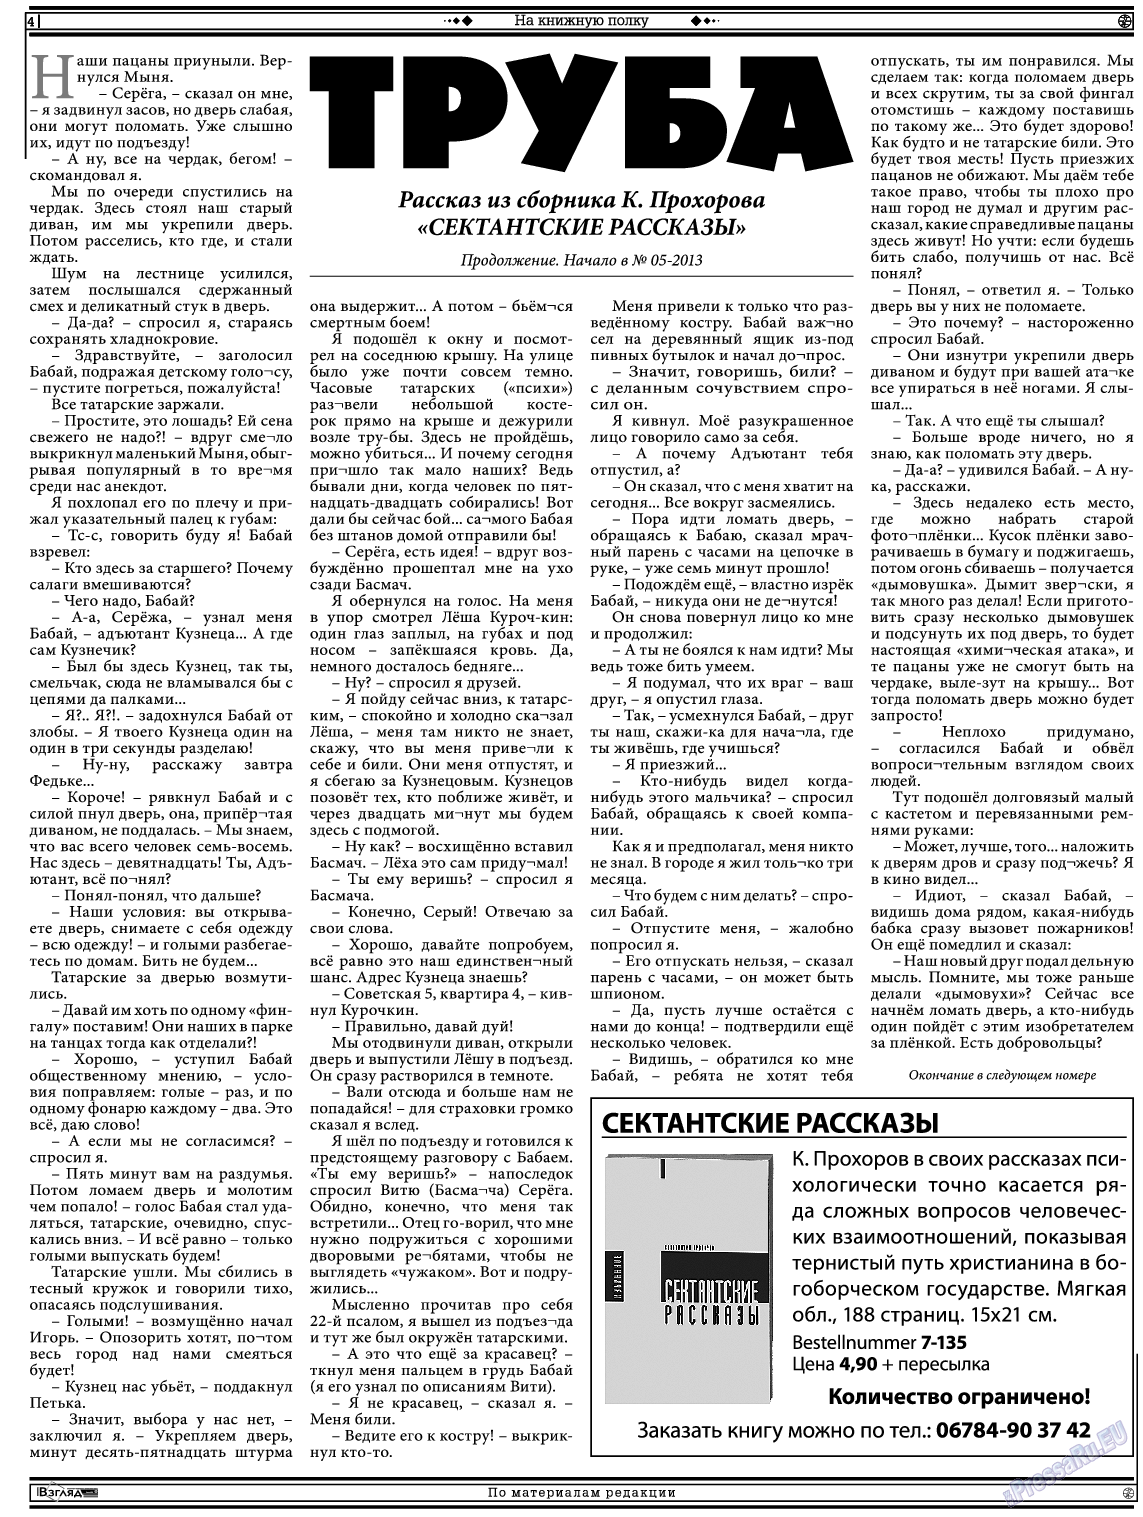 Христианская газета (газета). 2013 год, номер 6, стр. 18